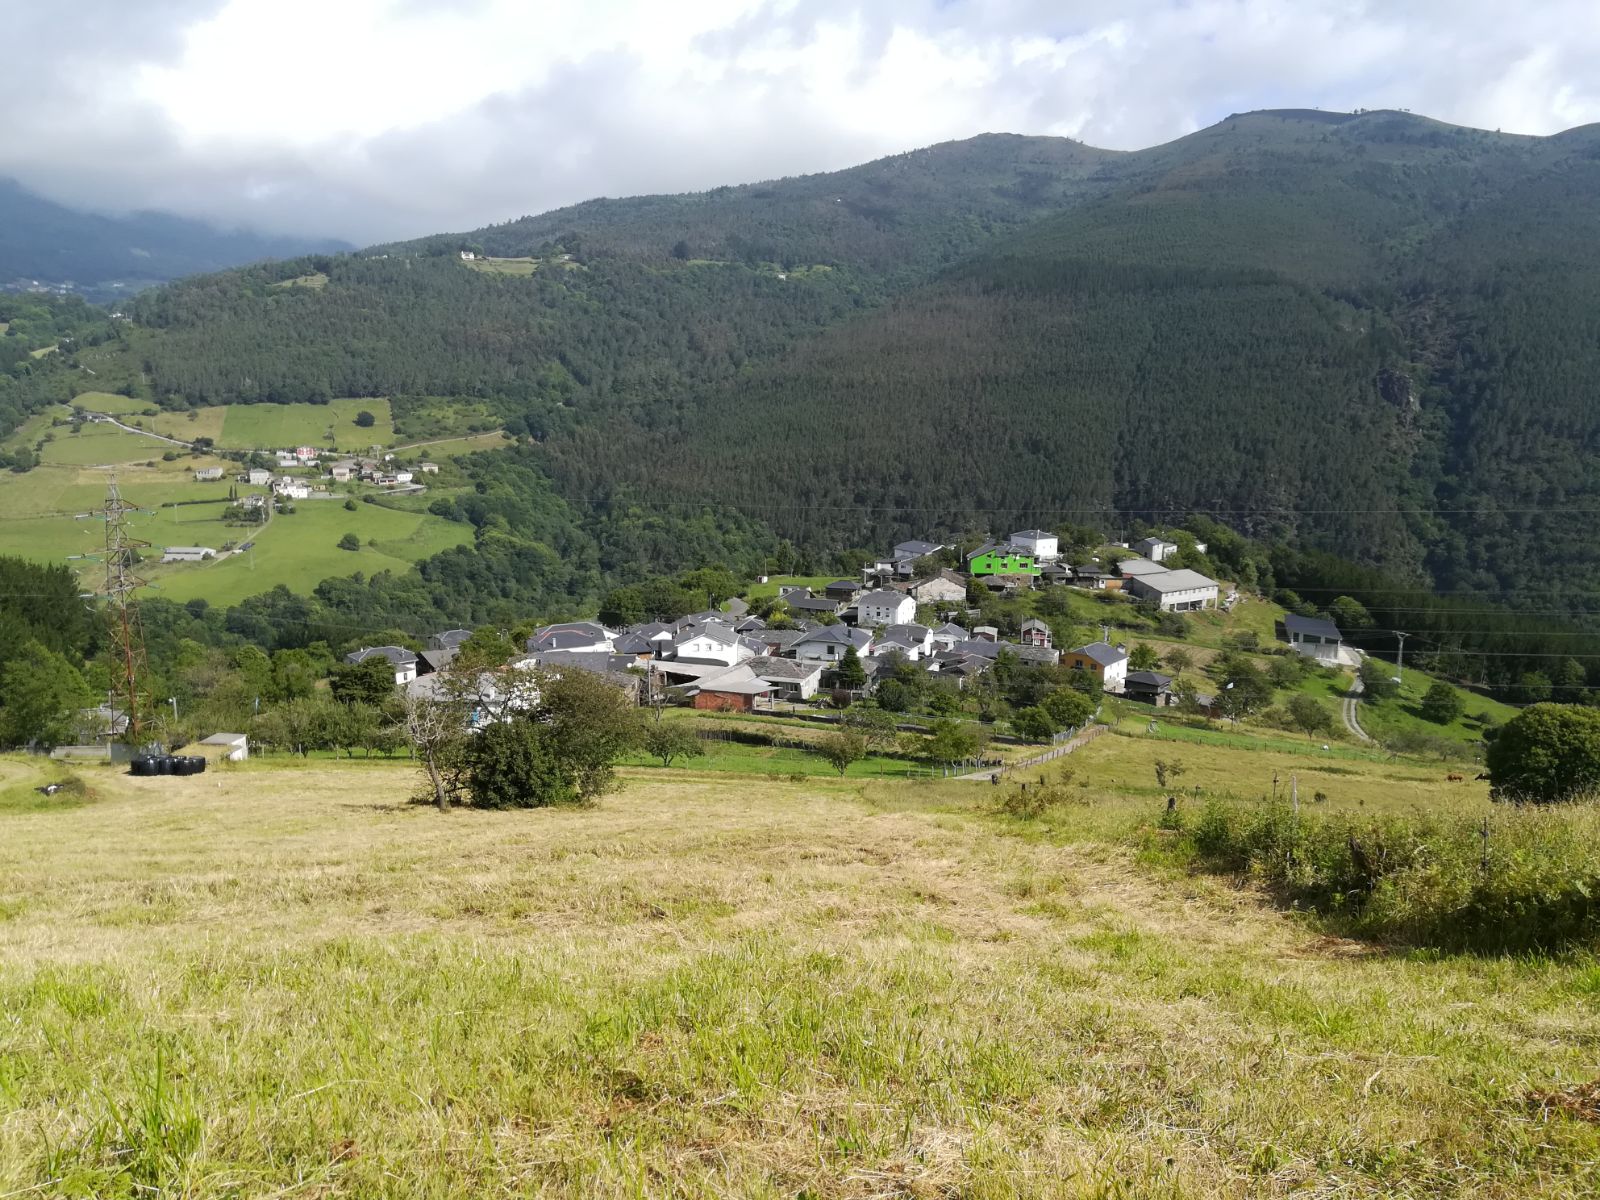 Casa Manolón - Rural tourism accommodation in western Asturias